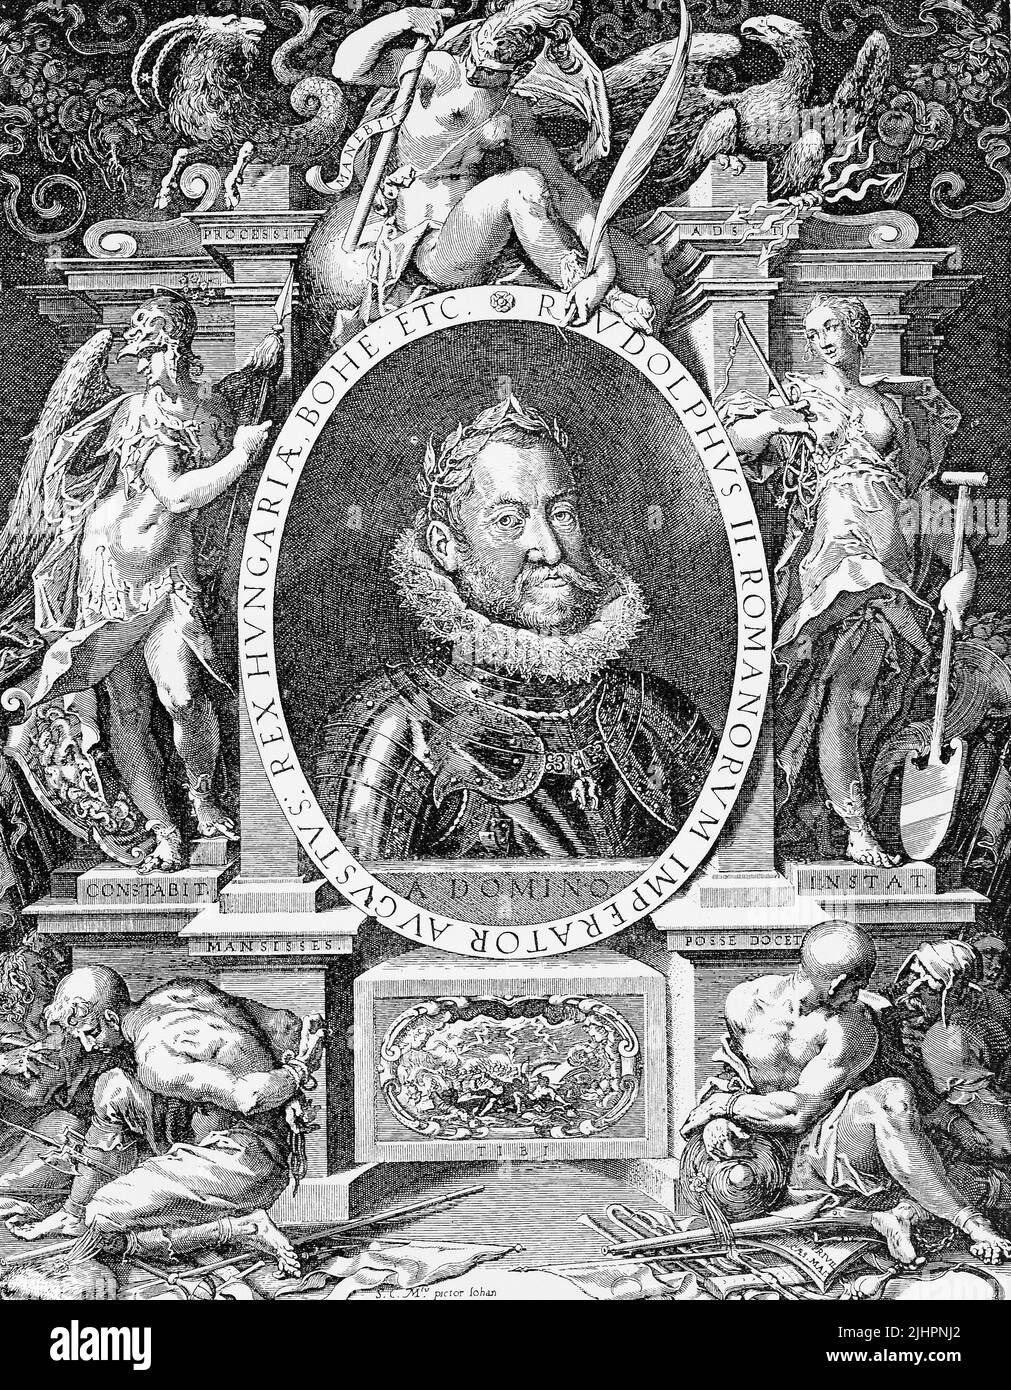 Rudolf II (geboren 18. Juli 1552, gestorben 20. Januar 1612) GUERRA Kaiser des Heiligen Römischen Reichs (1576-1612), König von Böhmen (1576-1611) sowie König von Ungarn und Erzherzog von Österreich (1576-1608) / Maximilian II (geboren am 31. Juli 1527, gestorben am 12. Oktober 1576), la guerra Kaiser des Heiligen Römischen Reiches und Erzherzog von Österreich von 1564 bis 1576, Historisch, digital restaurierte Reproduktion einer Originalvorlage aus dem 19. Jahrhundert, genaues Originaldatum nicht bekannt, Foto de stock